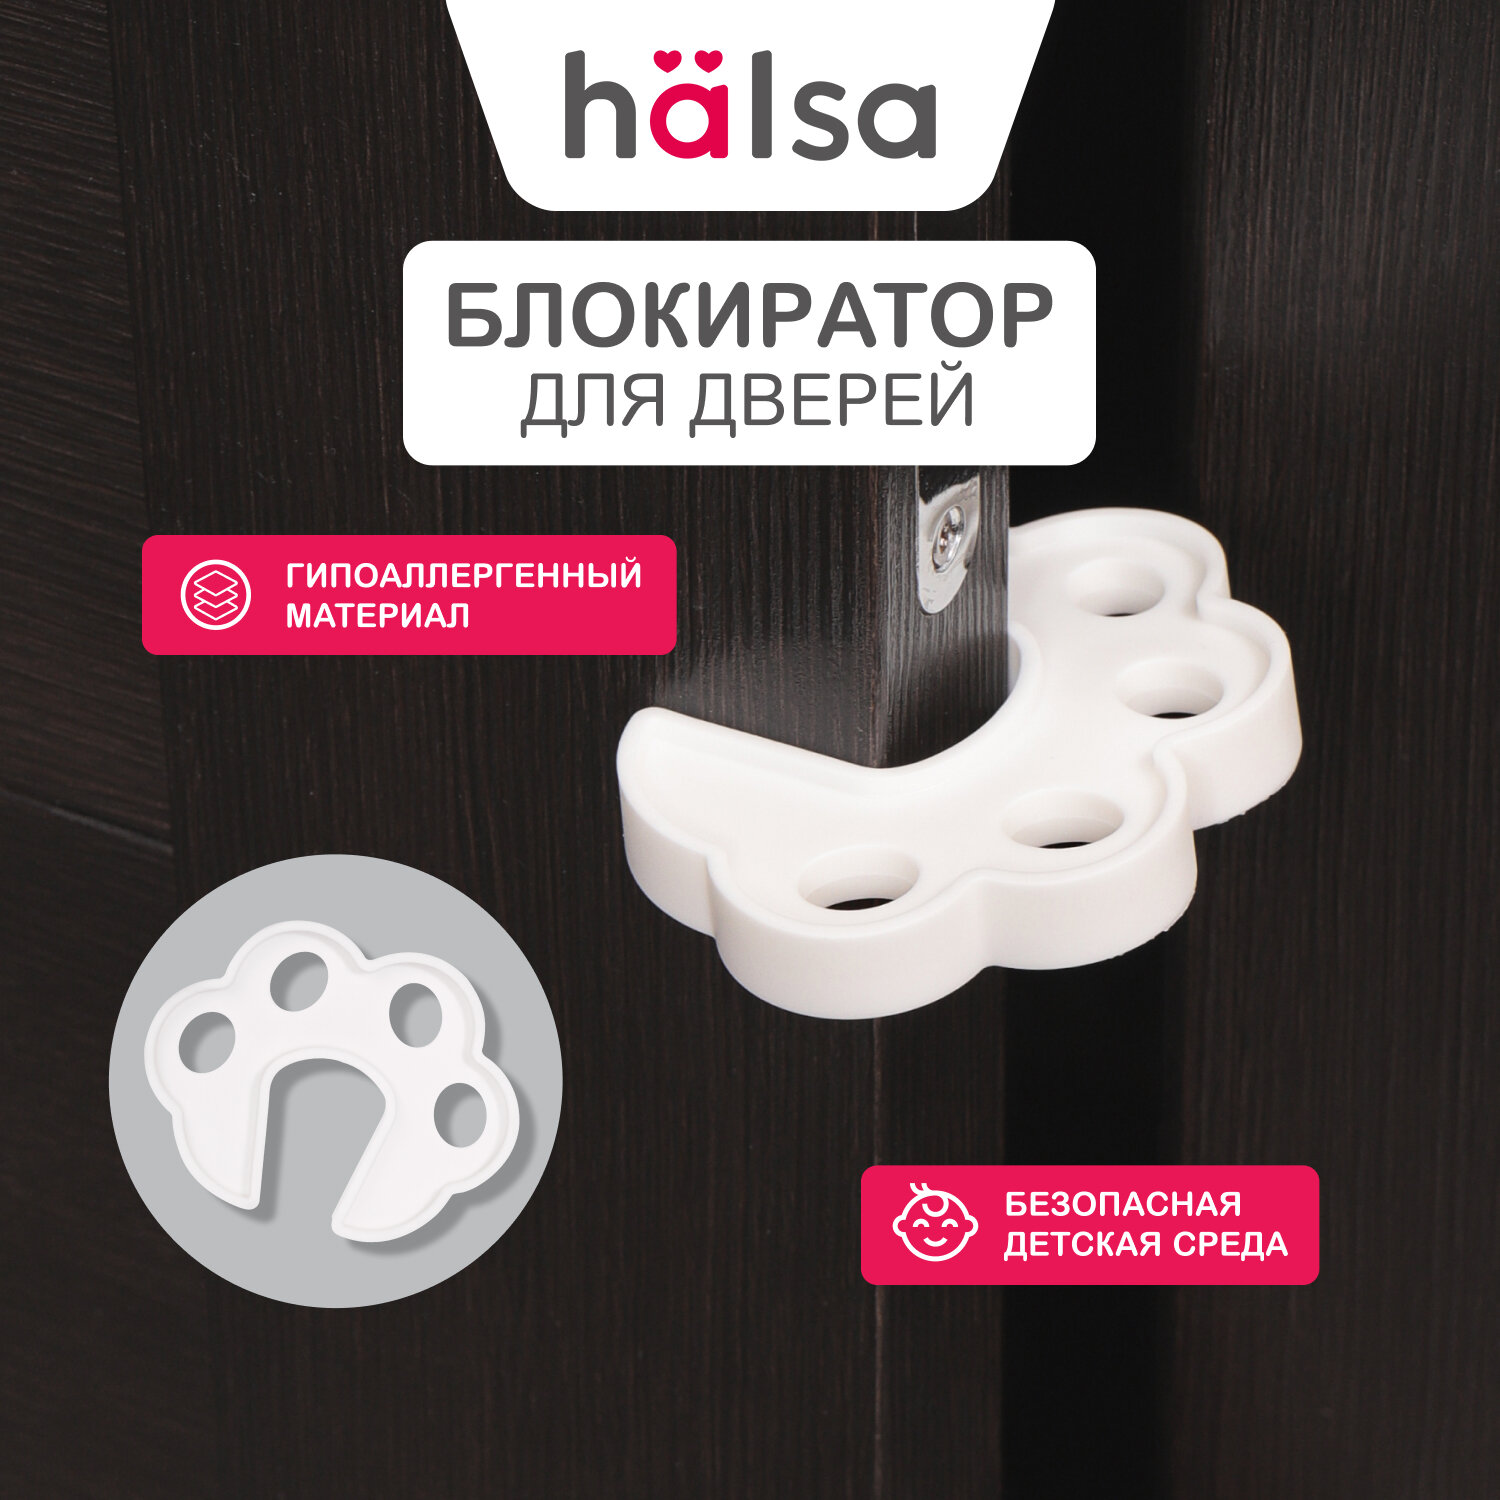 Ограничитель-стоппер двери HALSA форме лапки из гирпаллергенной резины для защиты детей